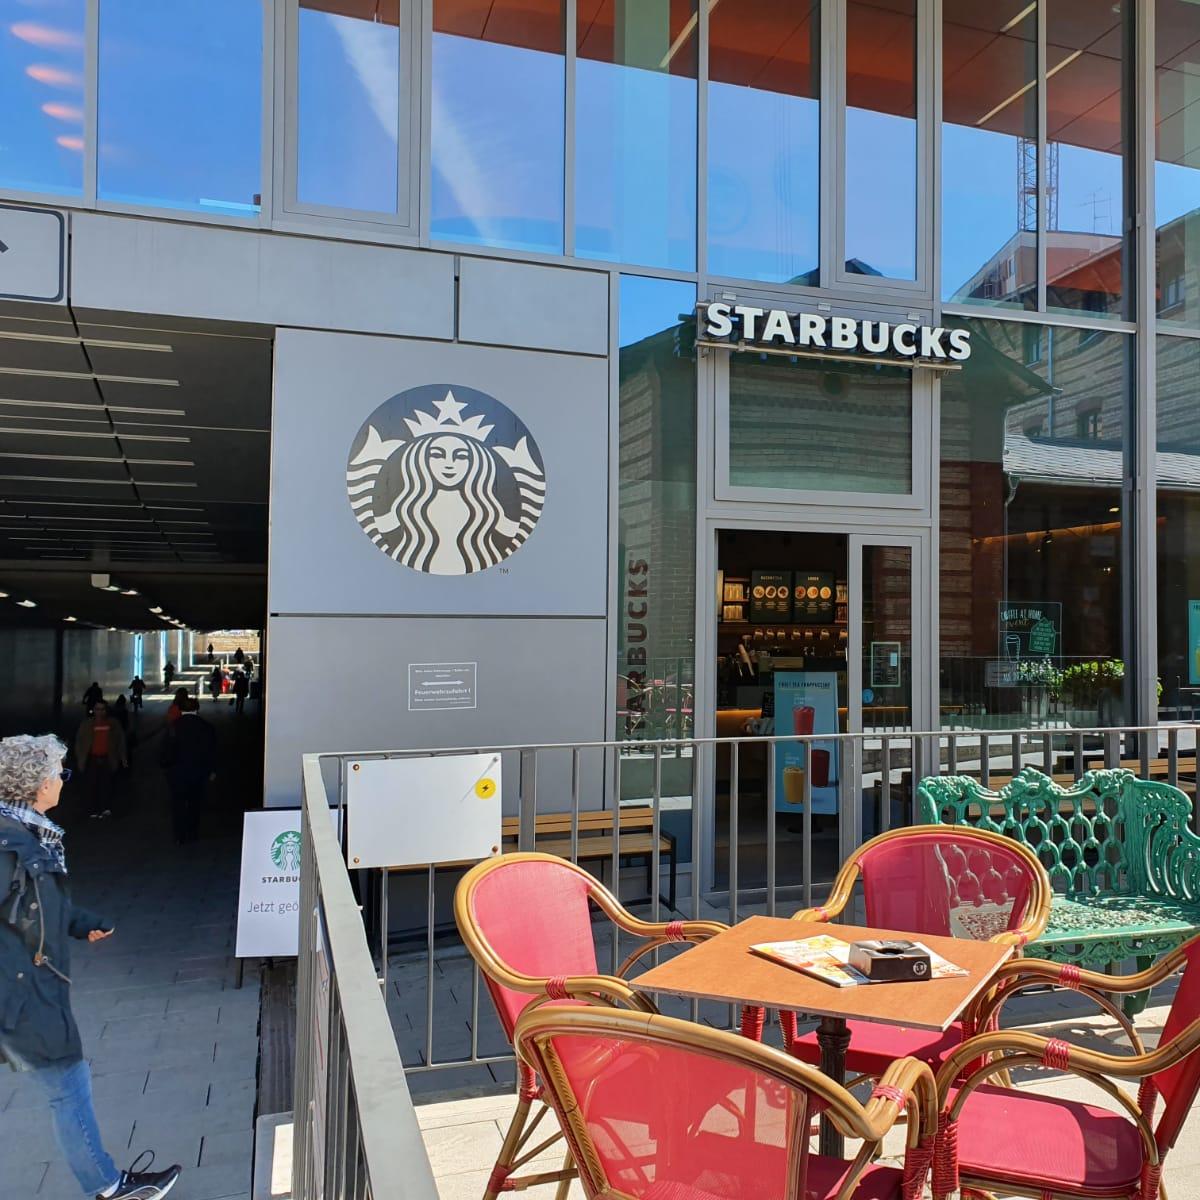 Restaurant "Starbucks" in München